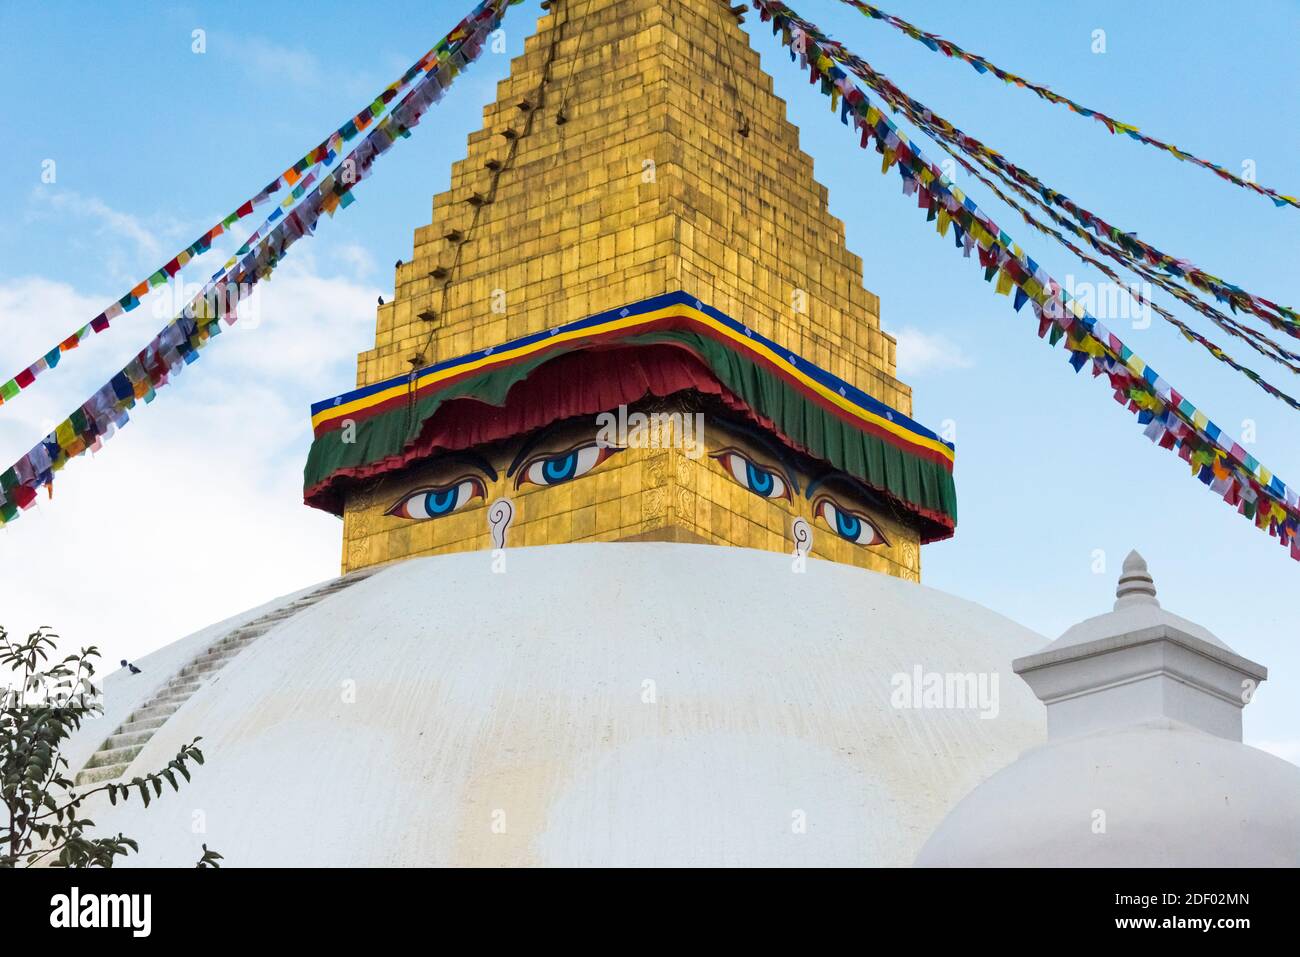 Boudhanath (Bouddha Stupa), site classé au patrimoine mondial de l'UNESCO, Katmandou, Népal Banque D'Images